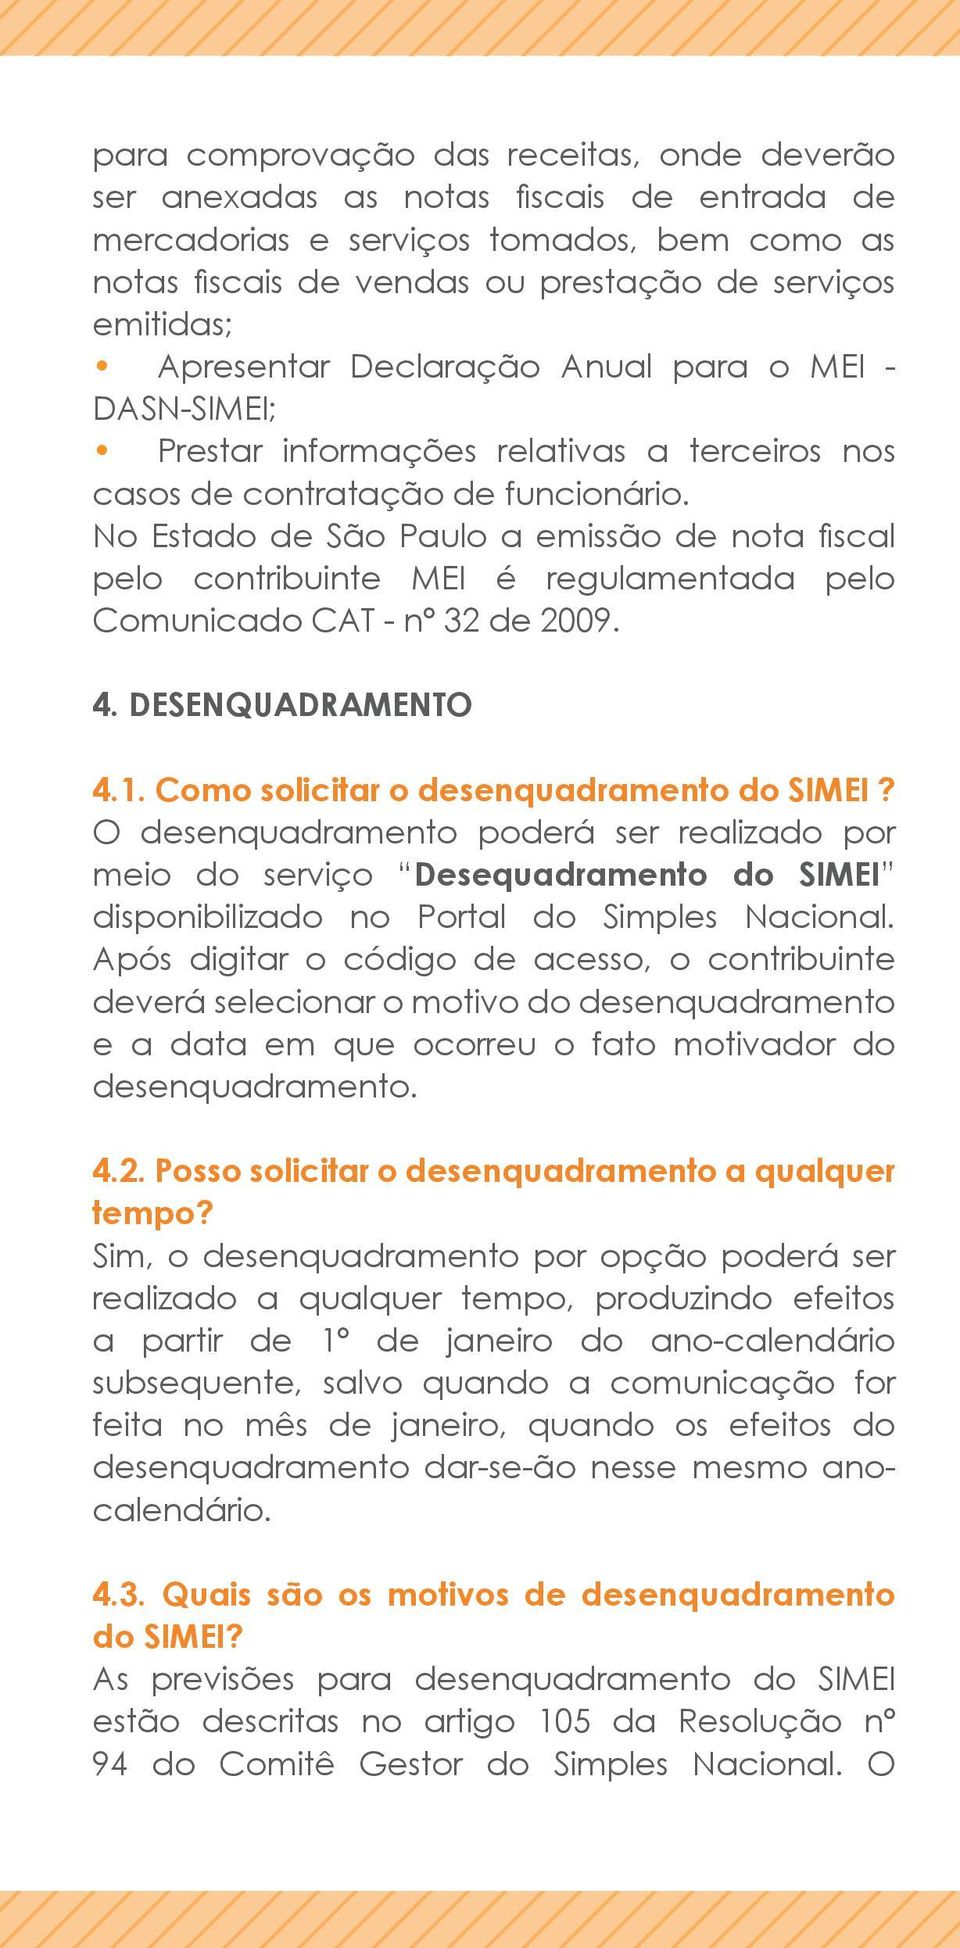 No Estado de São Paulo a emissão de nota fiscal pelo contribuinte MEI é regulamentada pelo Comunicado CAT - nº 32 de 2009. 4. DESENQUADRAMENTO 4.1. Como solicitar o desenquadramento do SIMEI?